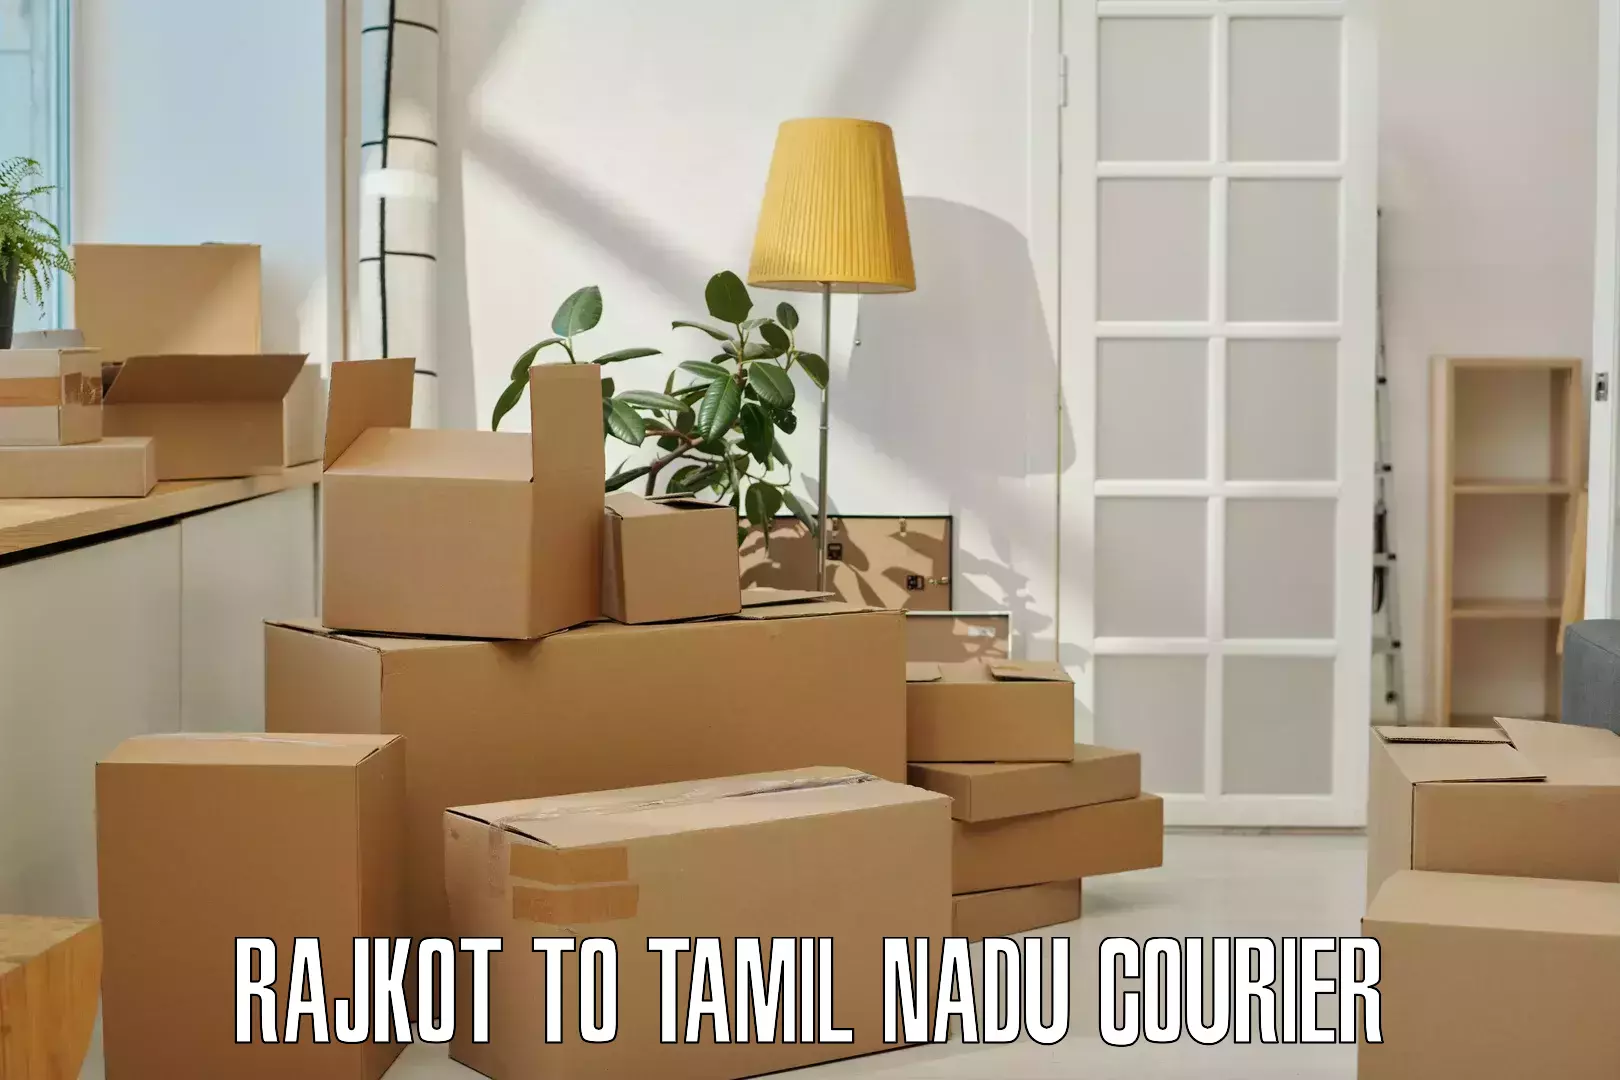 Express logistics providers Rajkot to Tamil Nadu